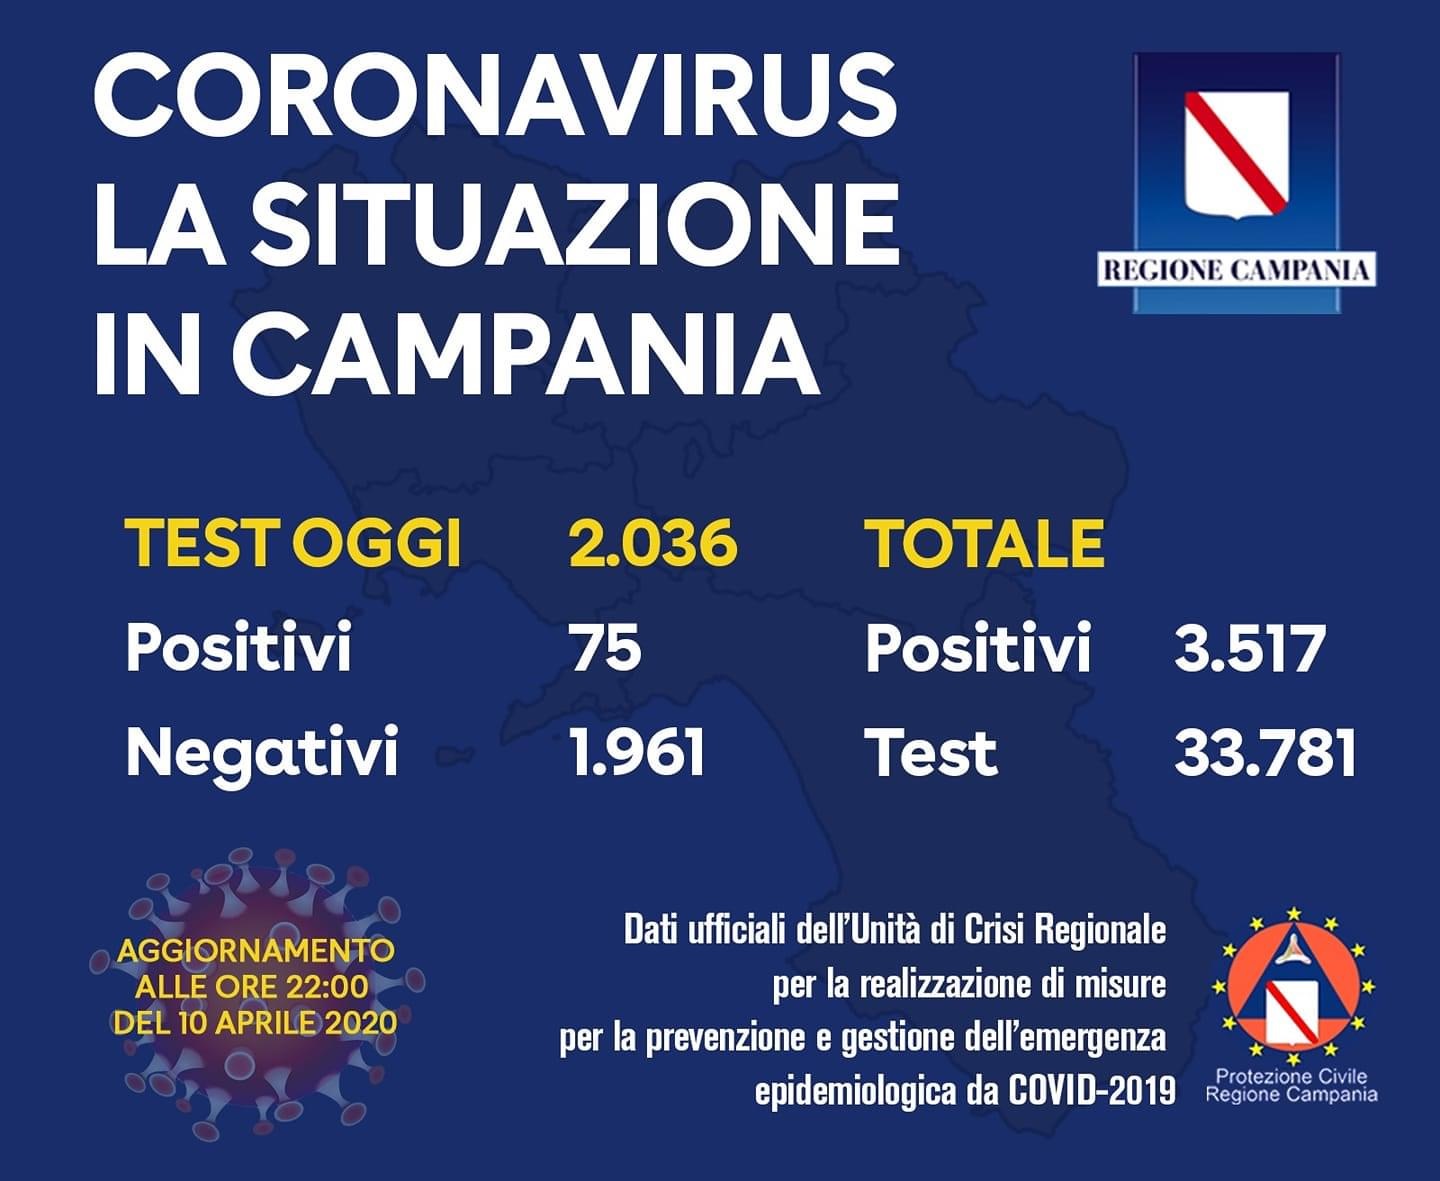 Covid- 19, oggi 75 nuovi positivi in Campania: 3500 i contagiati